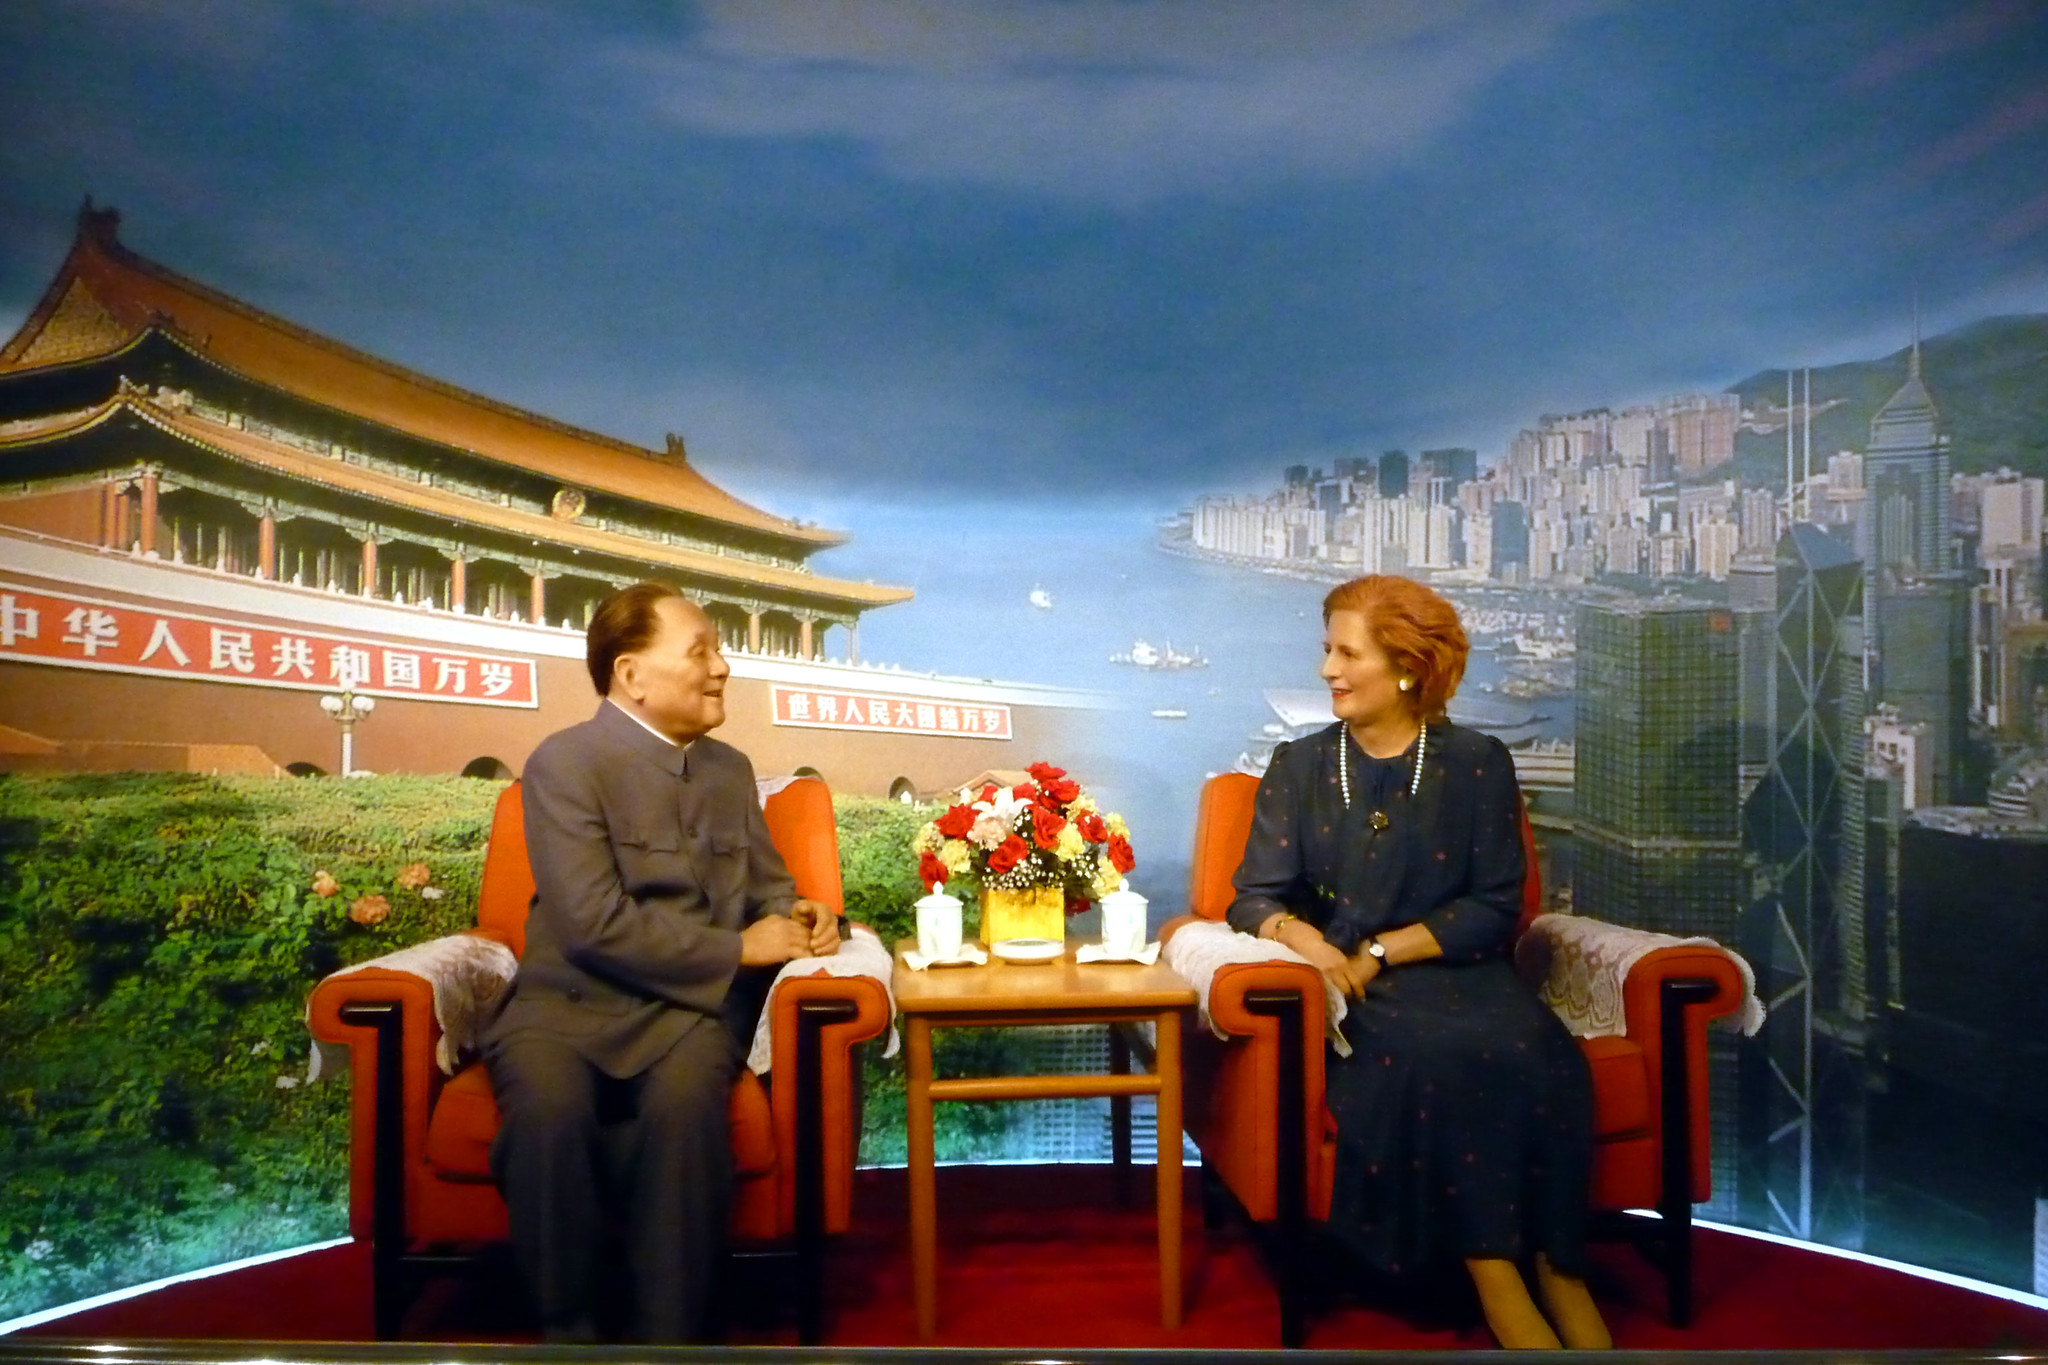 Teng-Hsziao-ping és Margaret Thatcher egy sencseni panoptikumban - működött a kifárasztás.